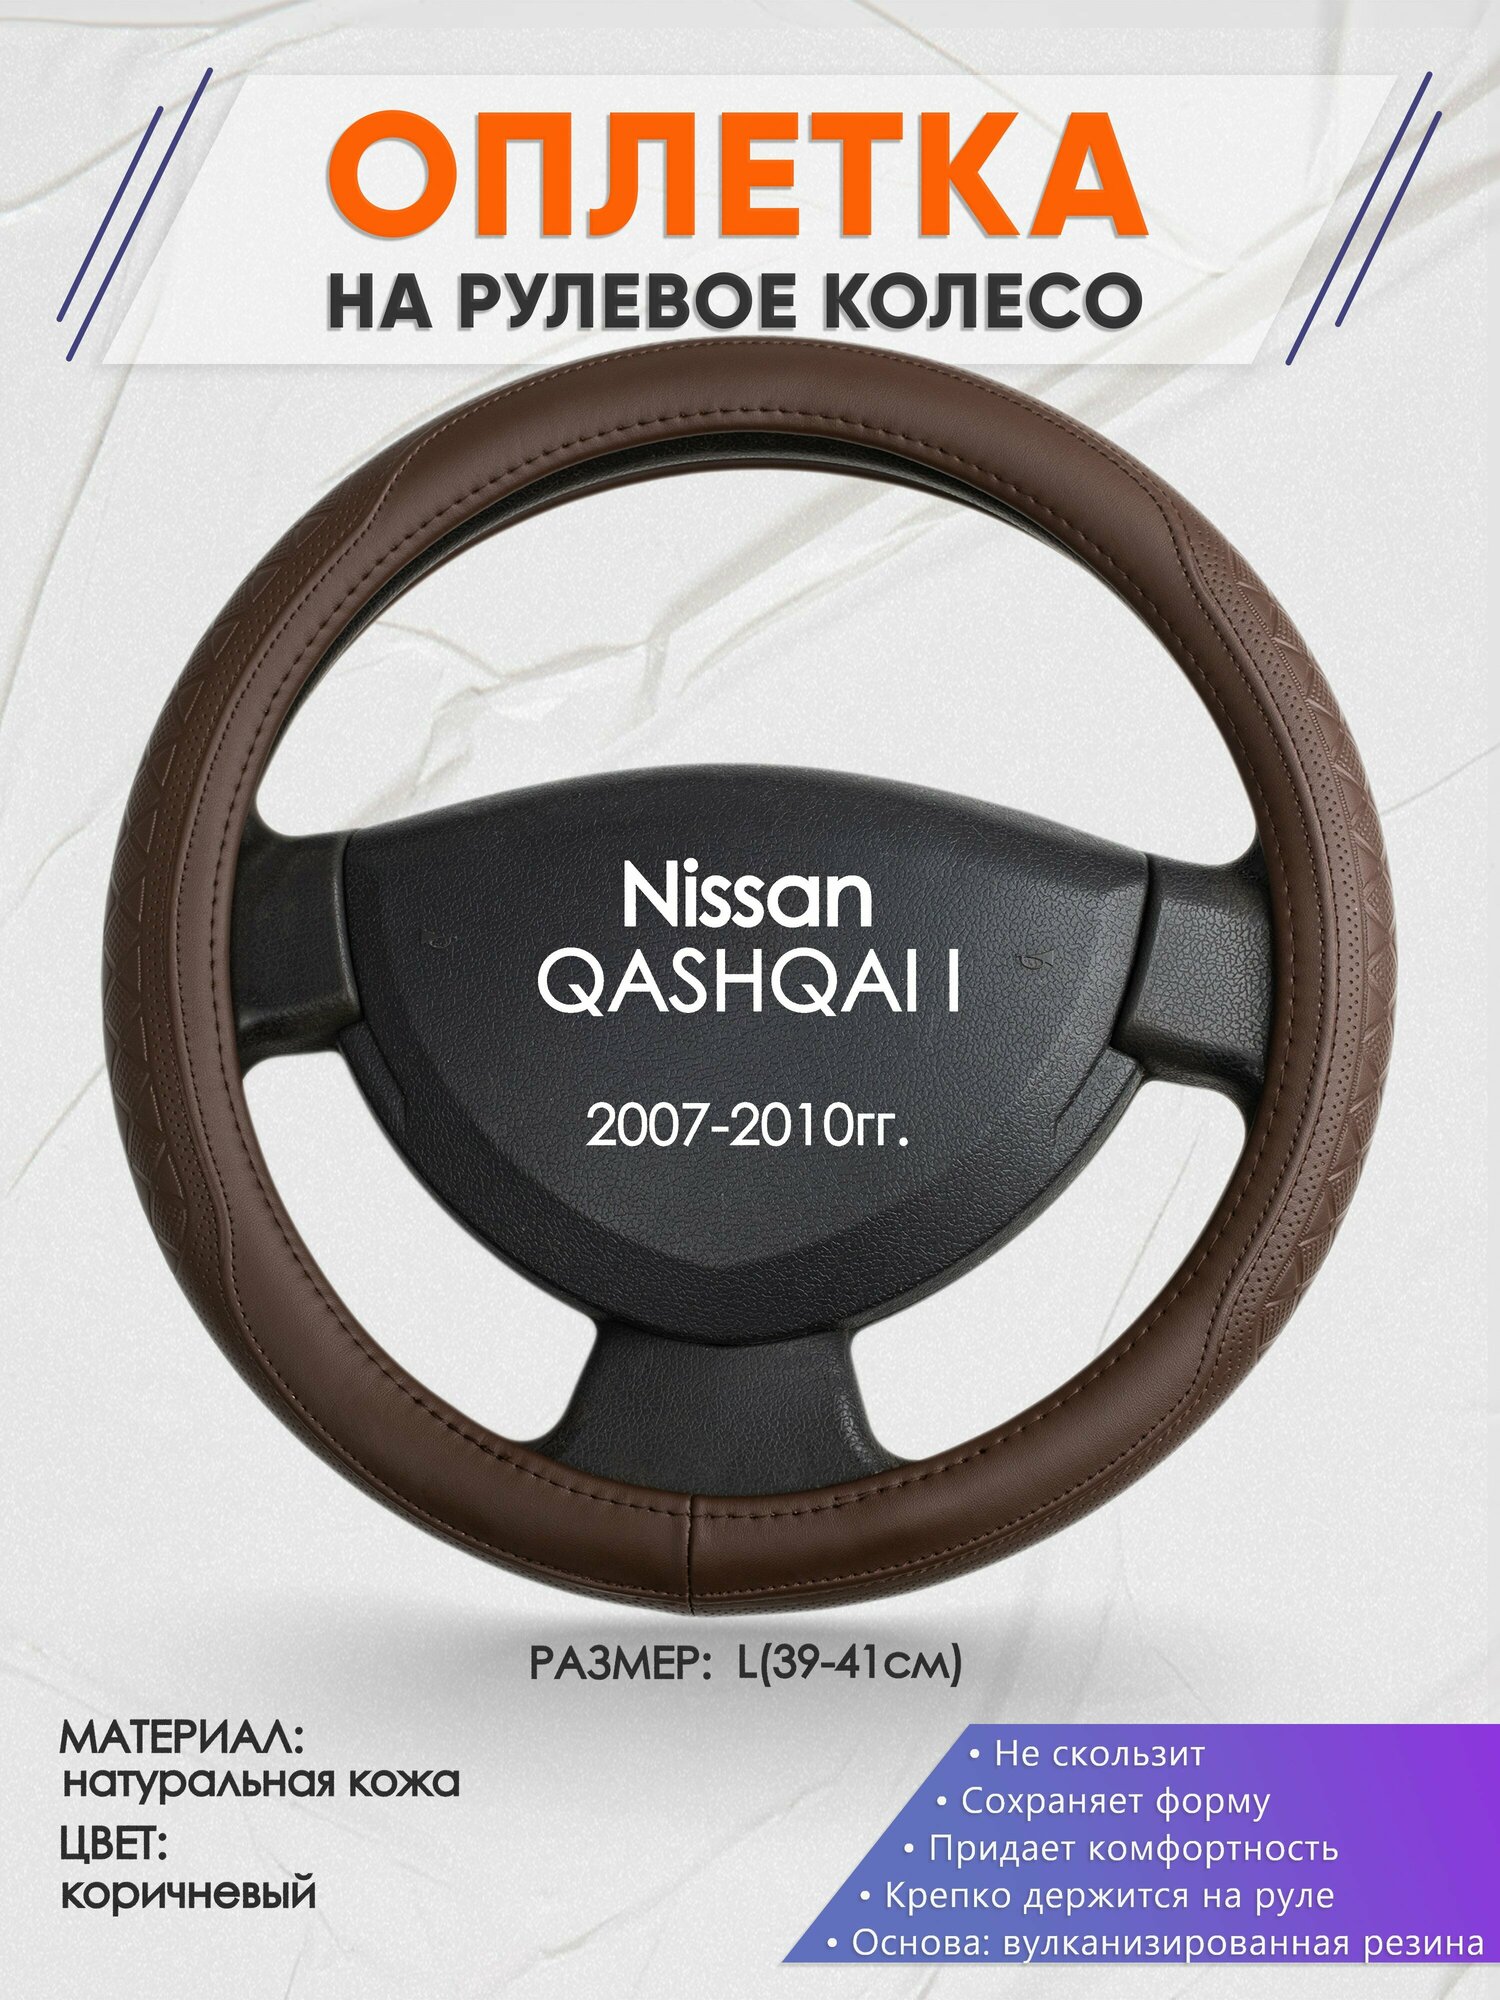 Оплетка на руль для Nissan QASHQAI I(Ниссан Кашкай) 2007-2010 L(39-41см) Натуральная кожа 90